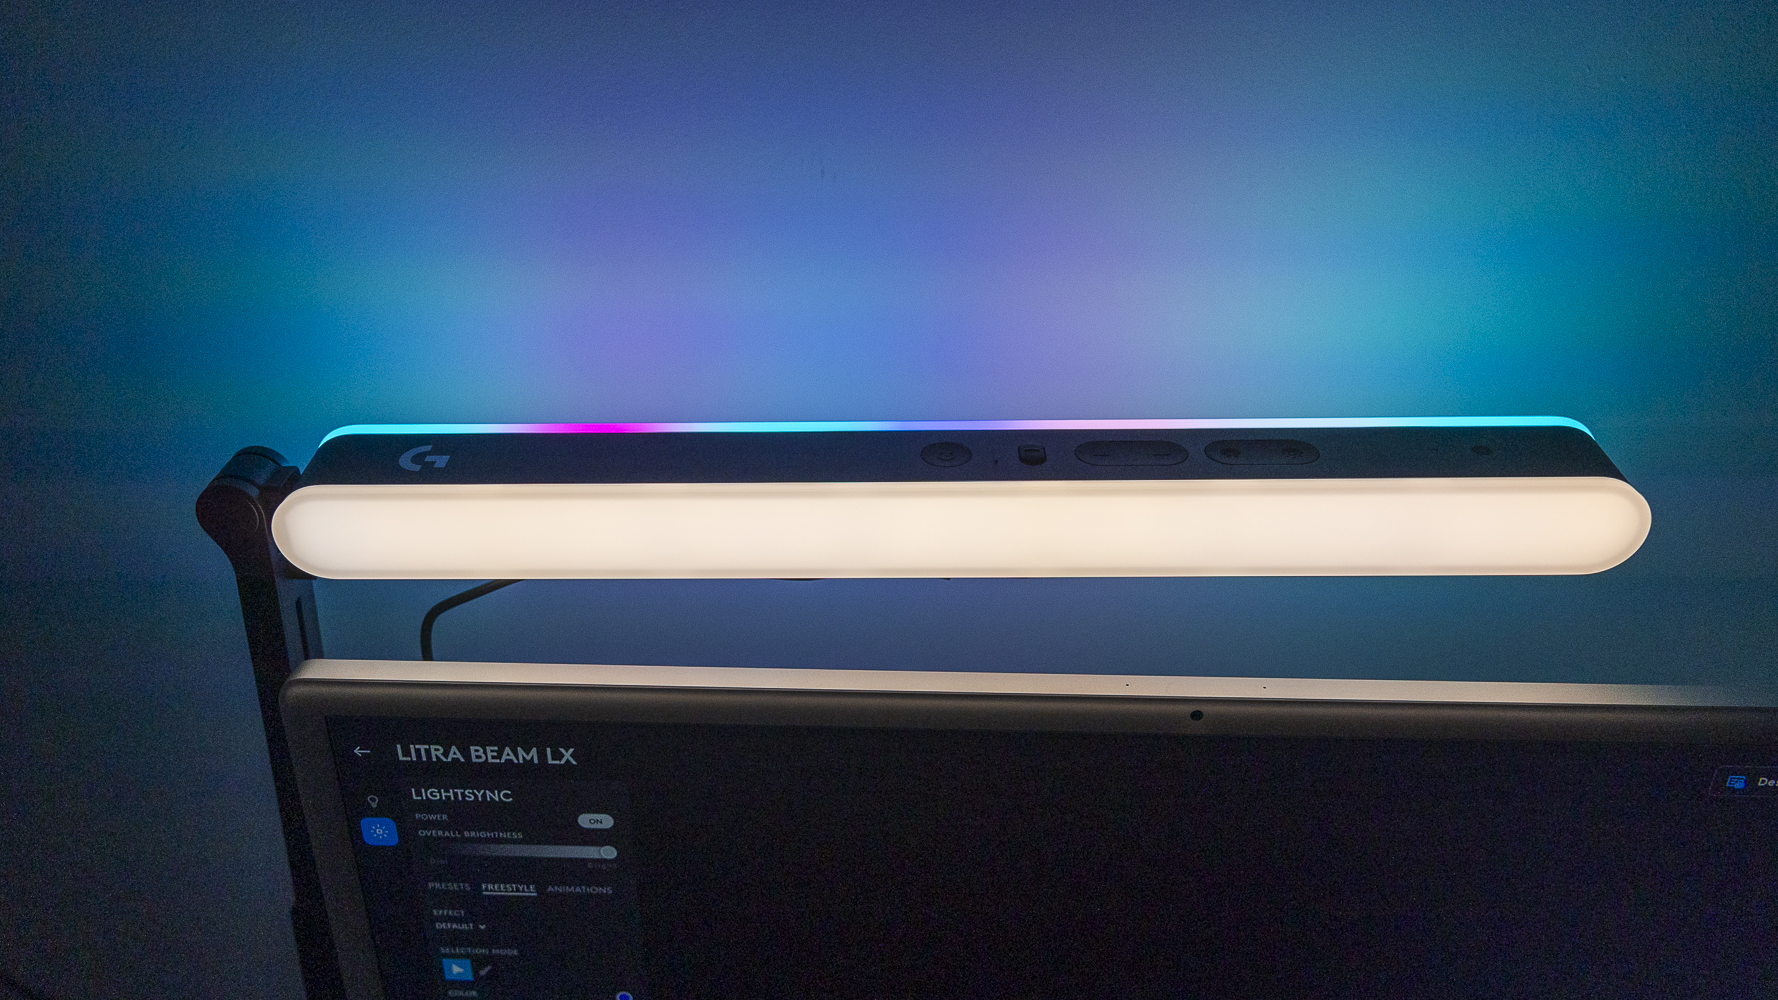 iMac'in arkasındaki Logitech G Litra Beam LX